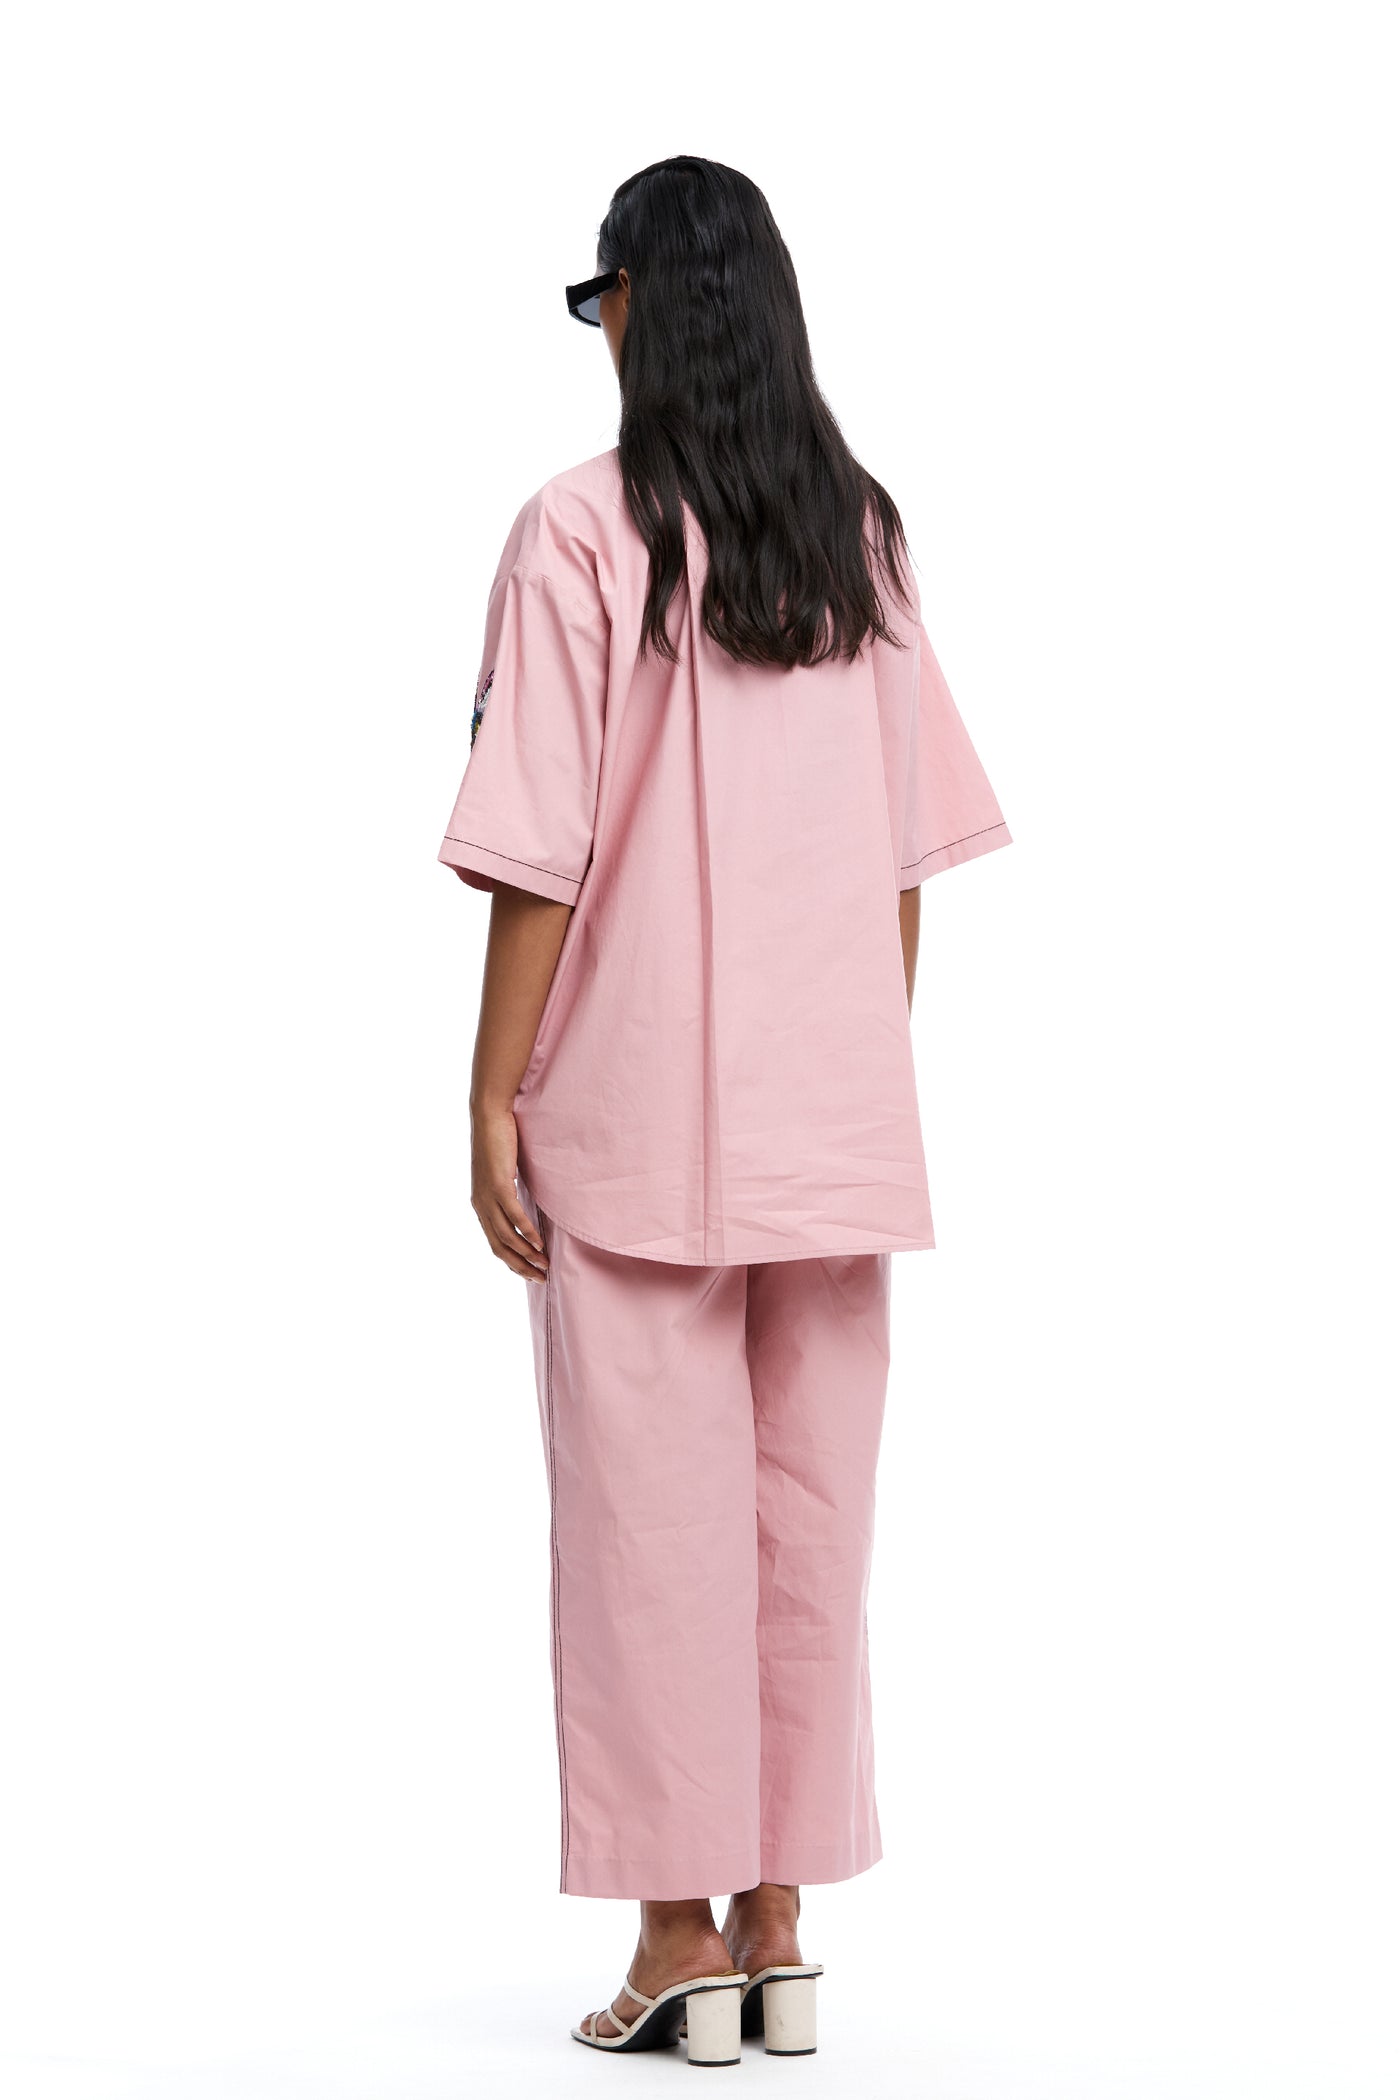 Kanika Goyal Label Solid Ankle Length Pants Pink indian designer wear online shopping melange singapore